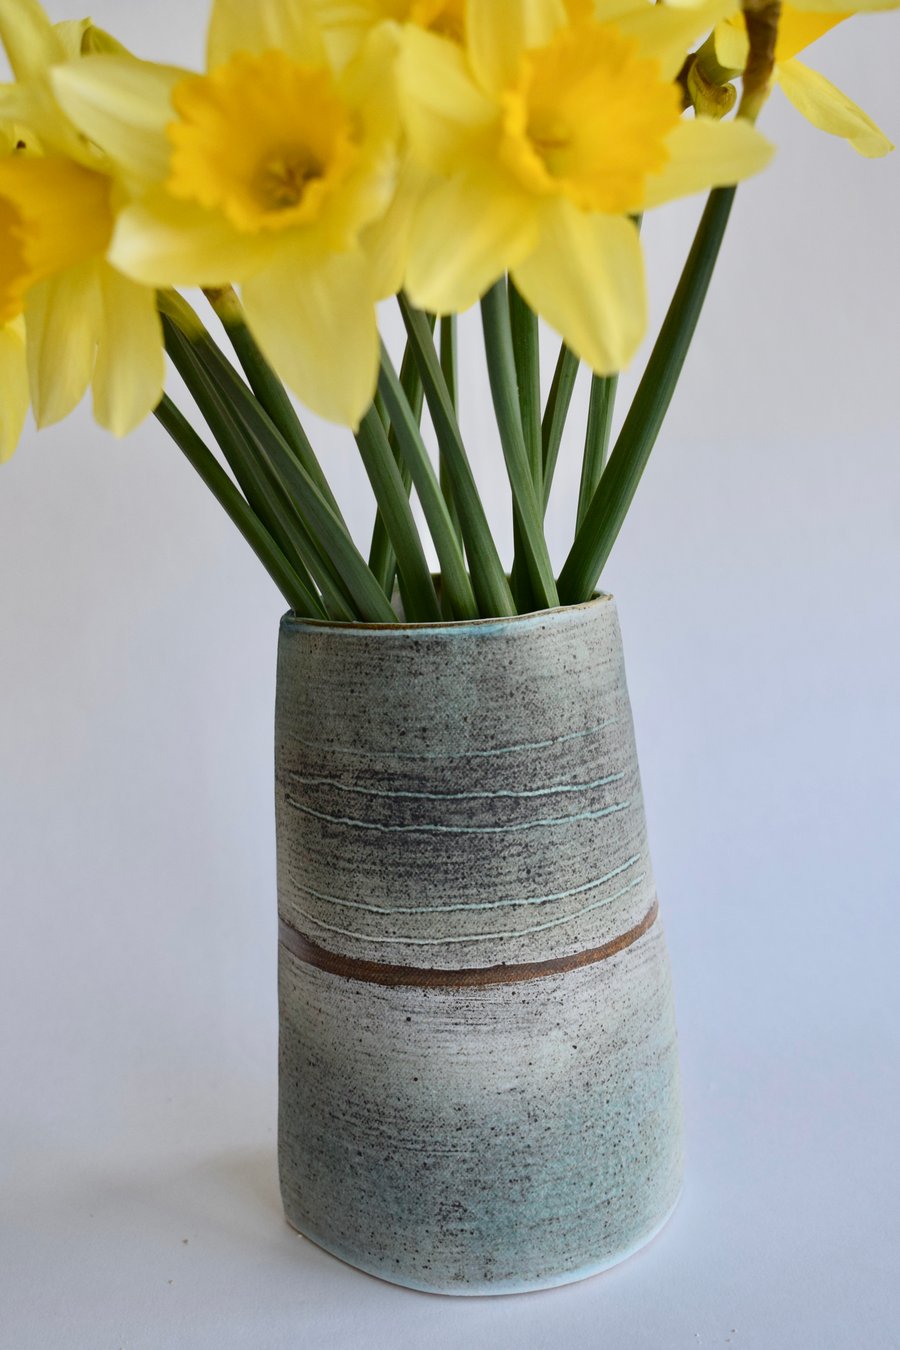 Large Stoneware Ceramic  Flower Vase 